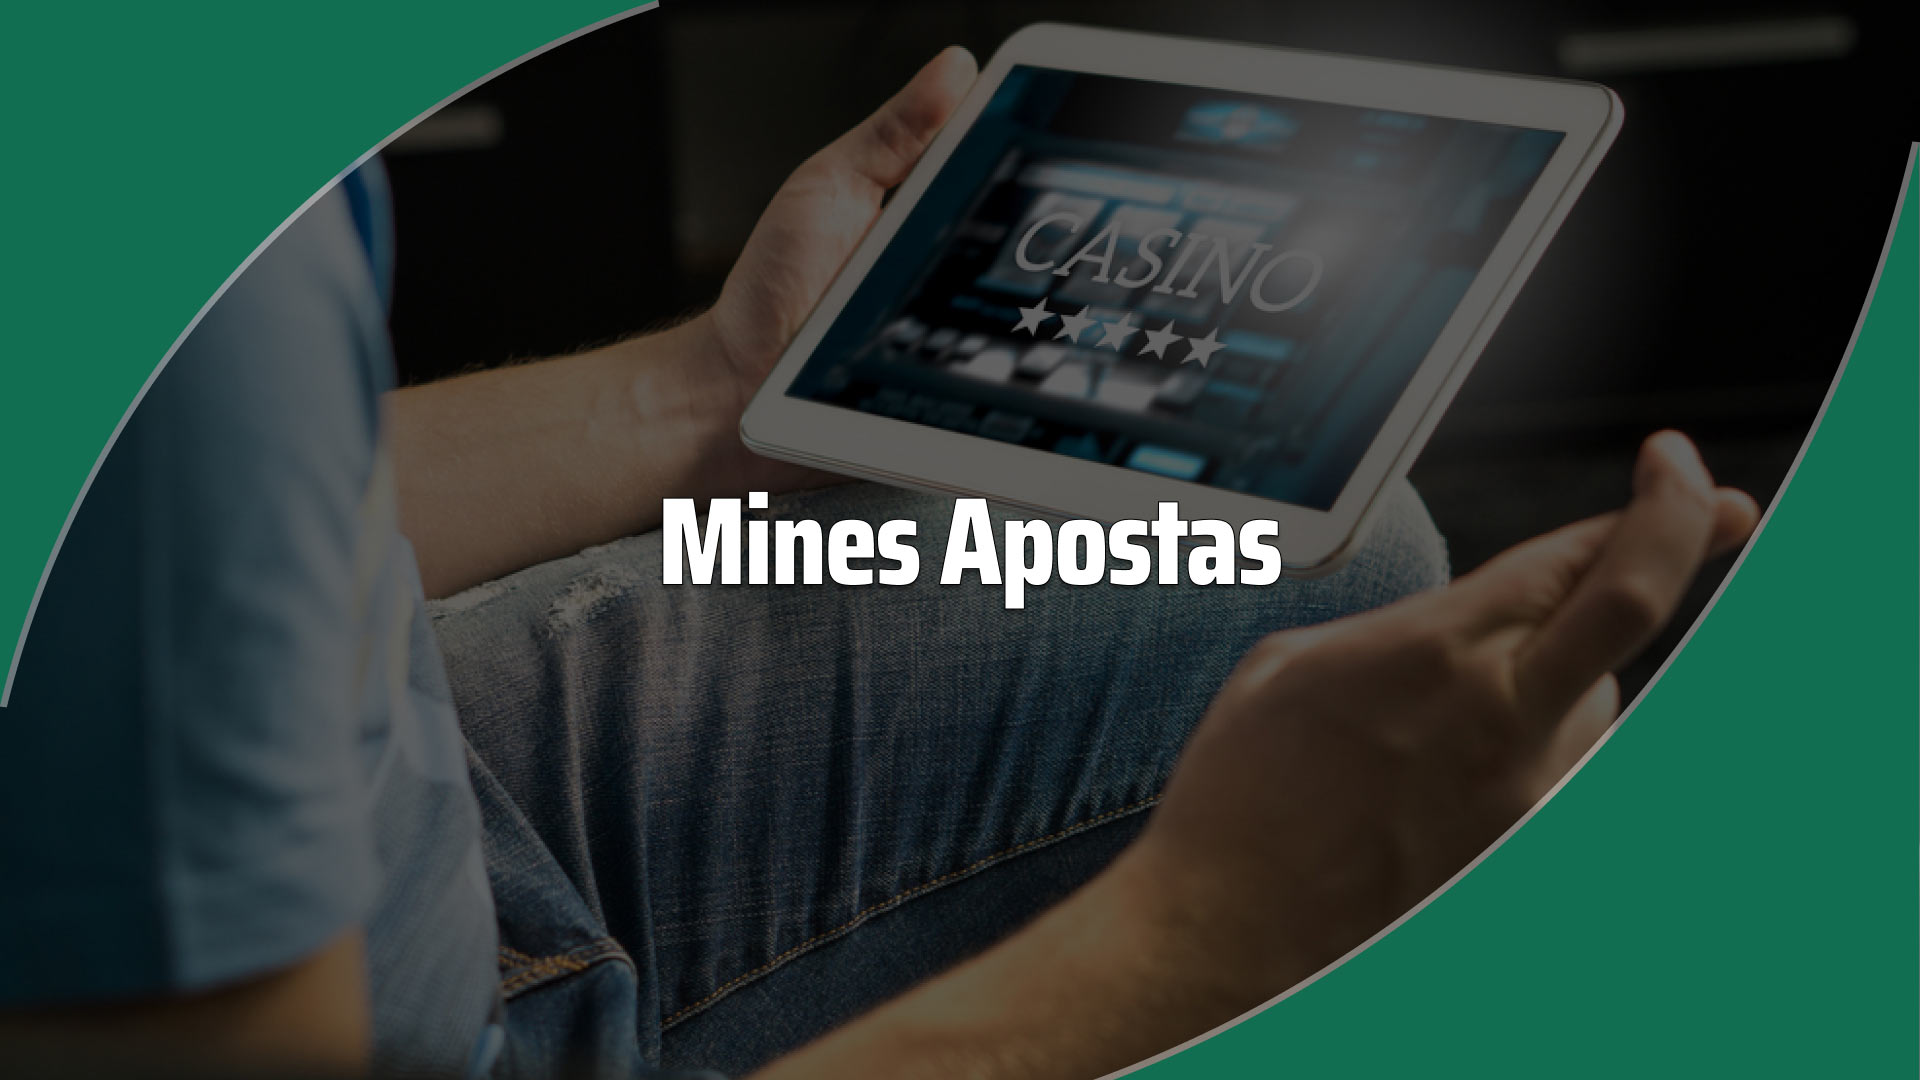 Mines aposta: melhores sites, dicas e bônus para o jogo